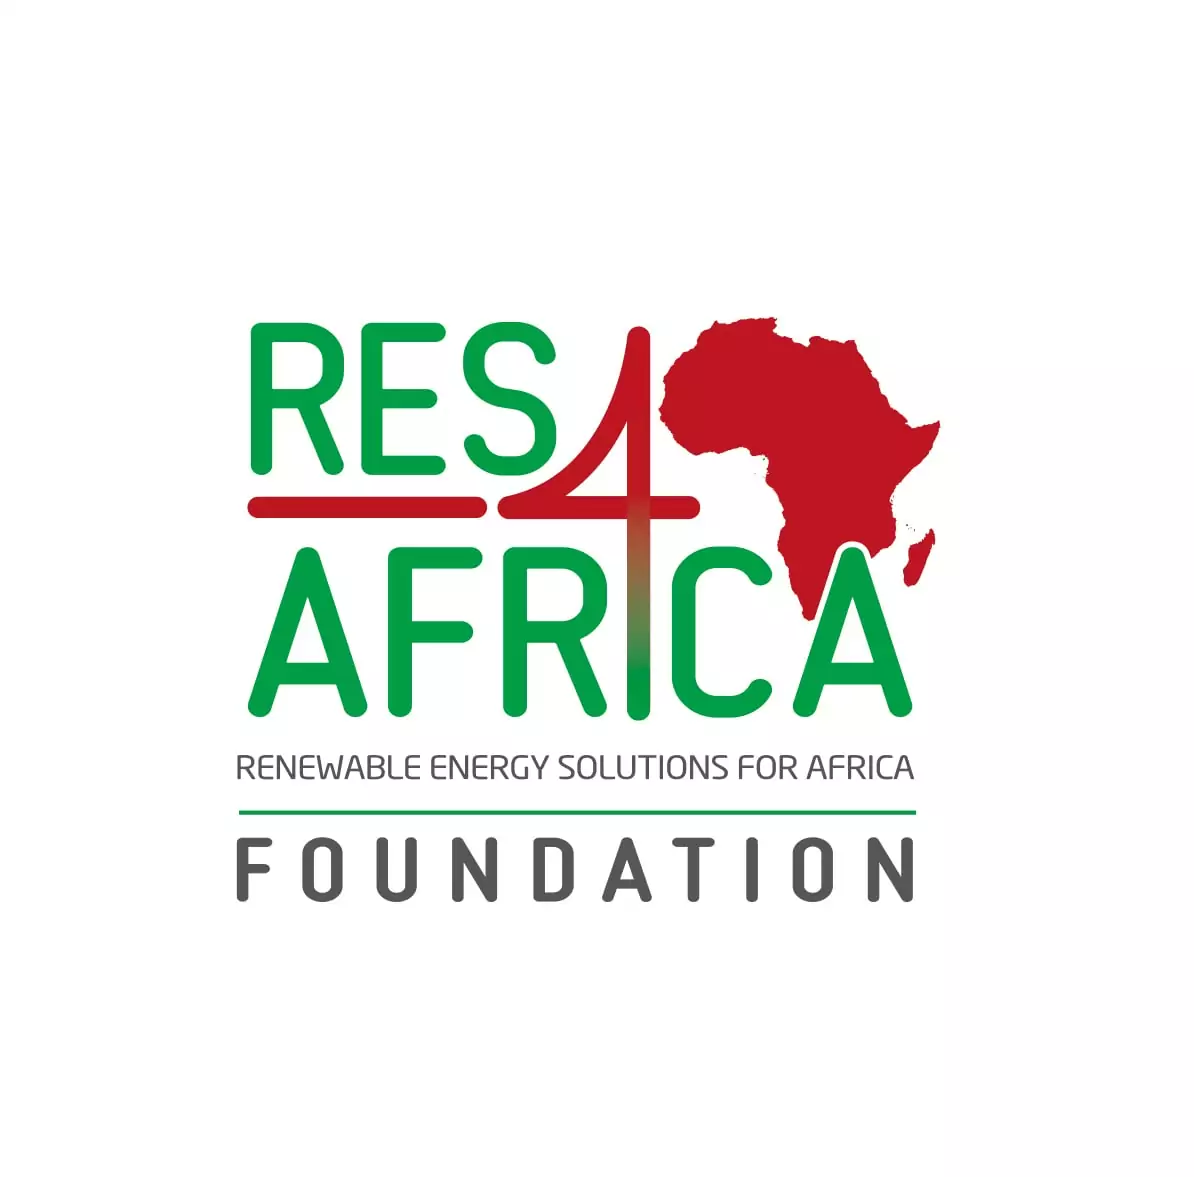 Bourses de formation sur les énergies renouvelables destinées aux professionnels africains